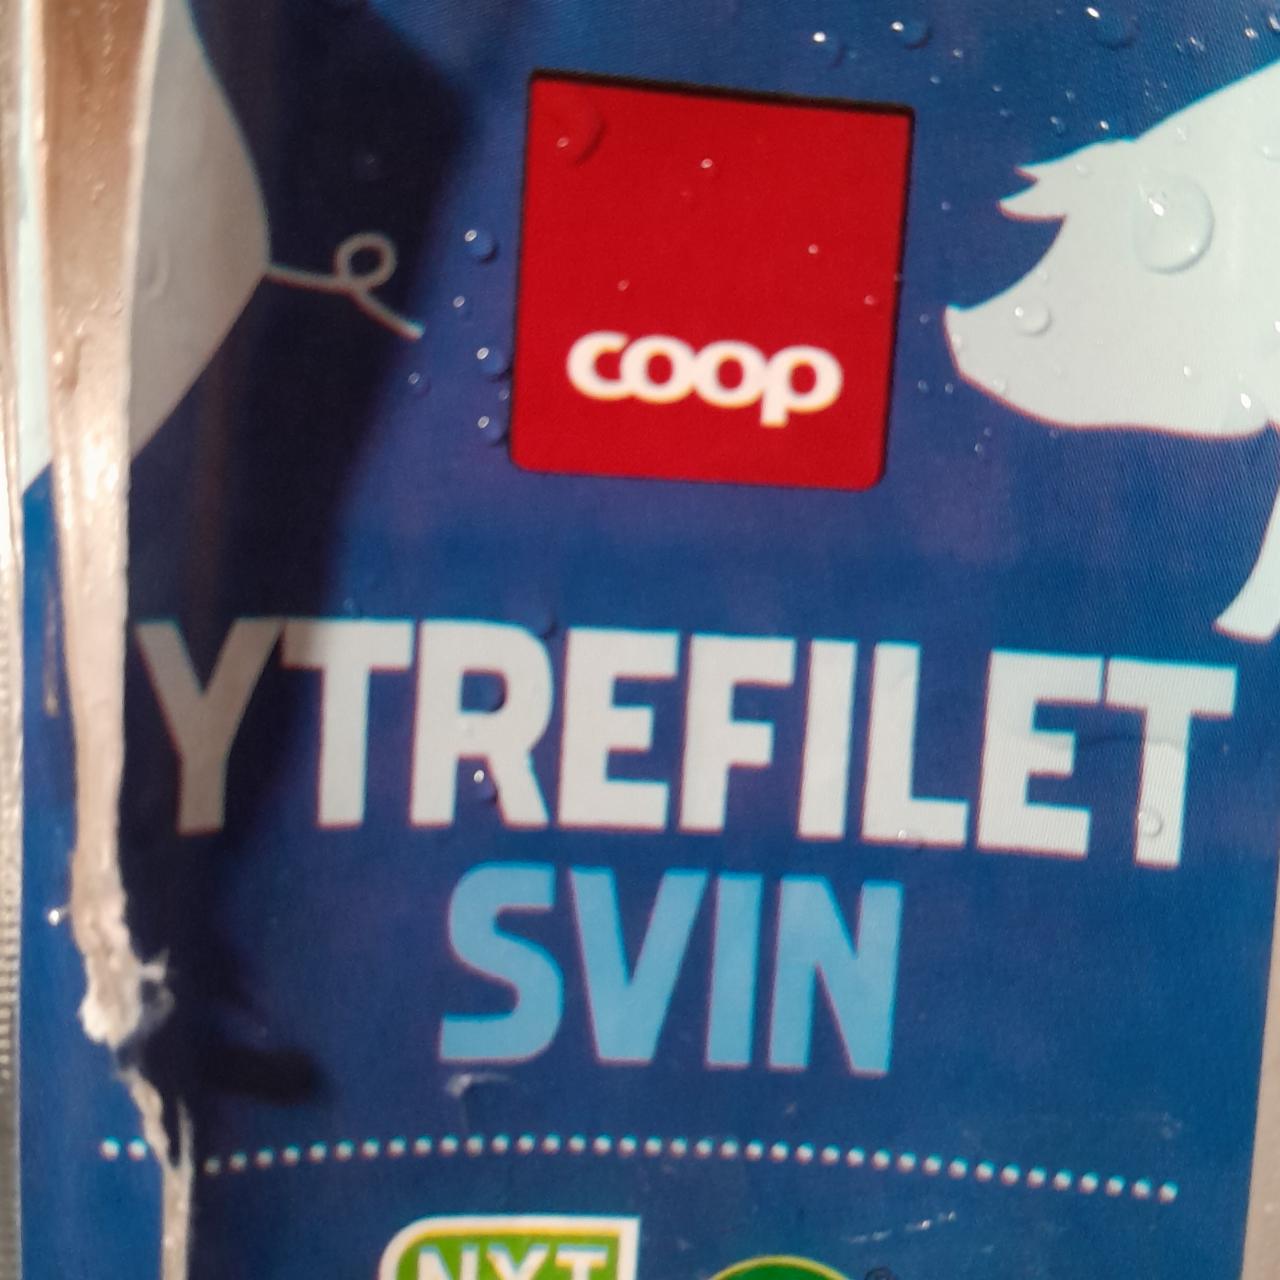 Фото - Ytrefilet svin 1.6% свинное филе Coop